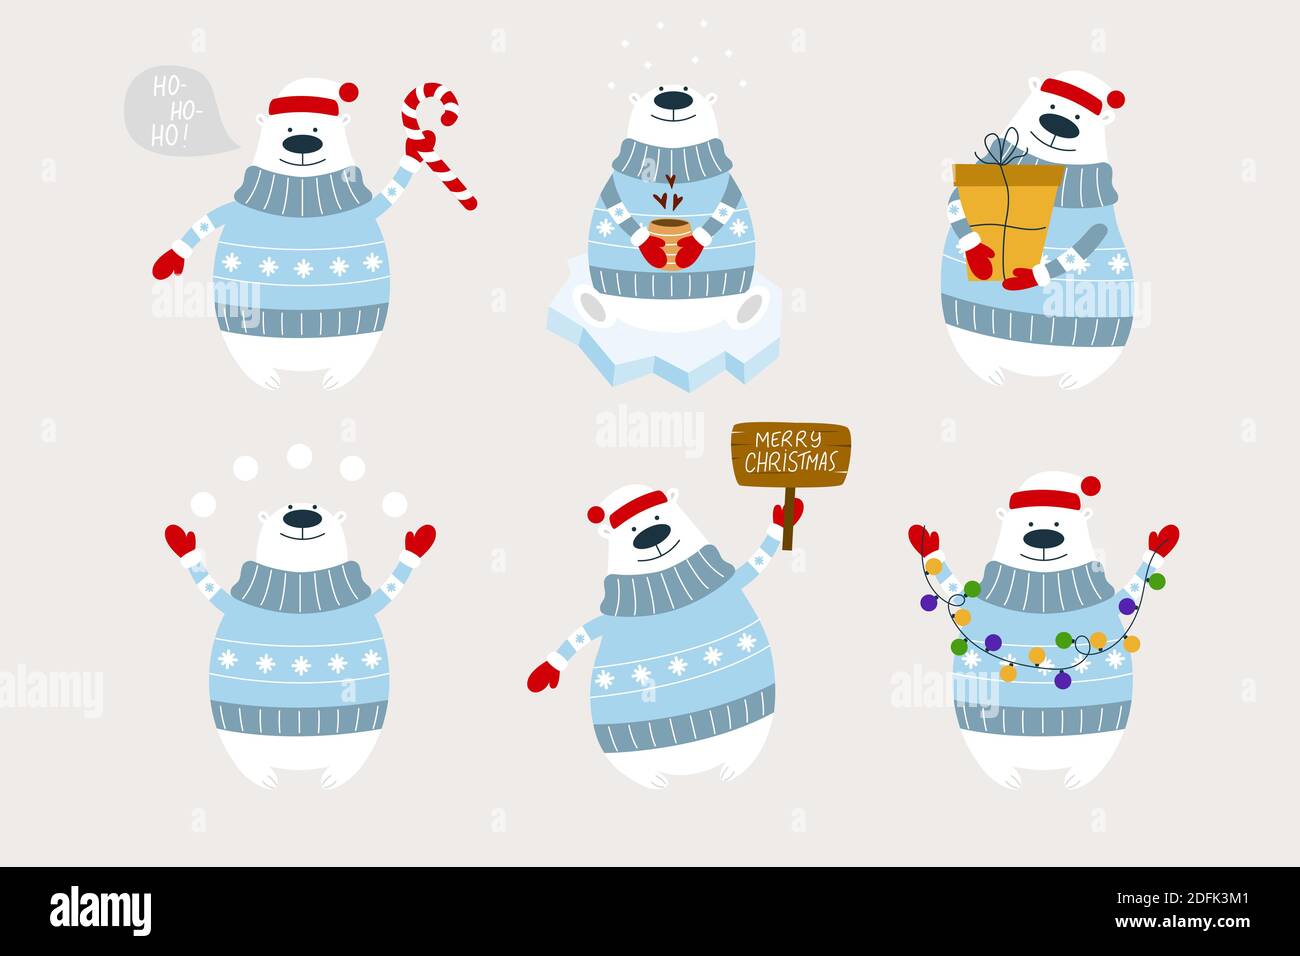 Eisbären mit Girlande, Geschenk, Schneebälle, Holzschild, Kerzenrohr, Tasse Kaffee. Weihnachten Vektor-Illustration mit Eisbären. Stock Vektor